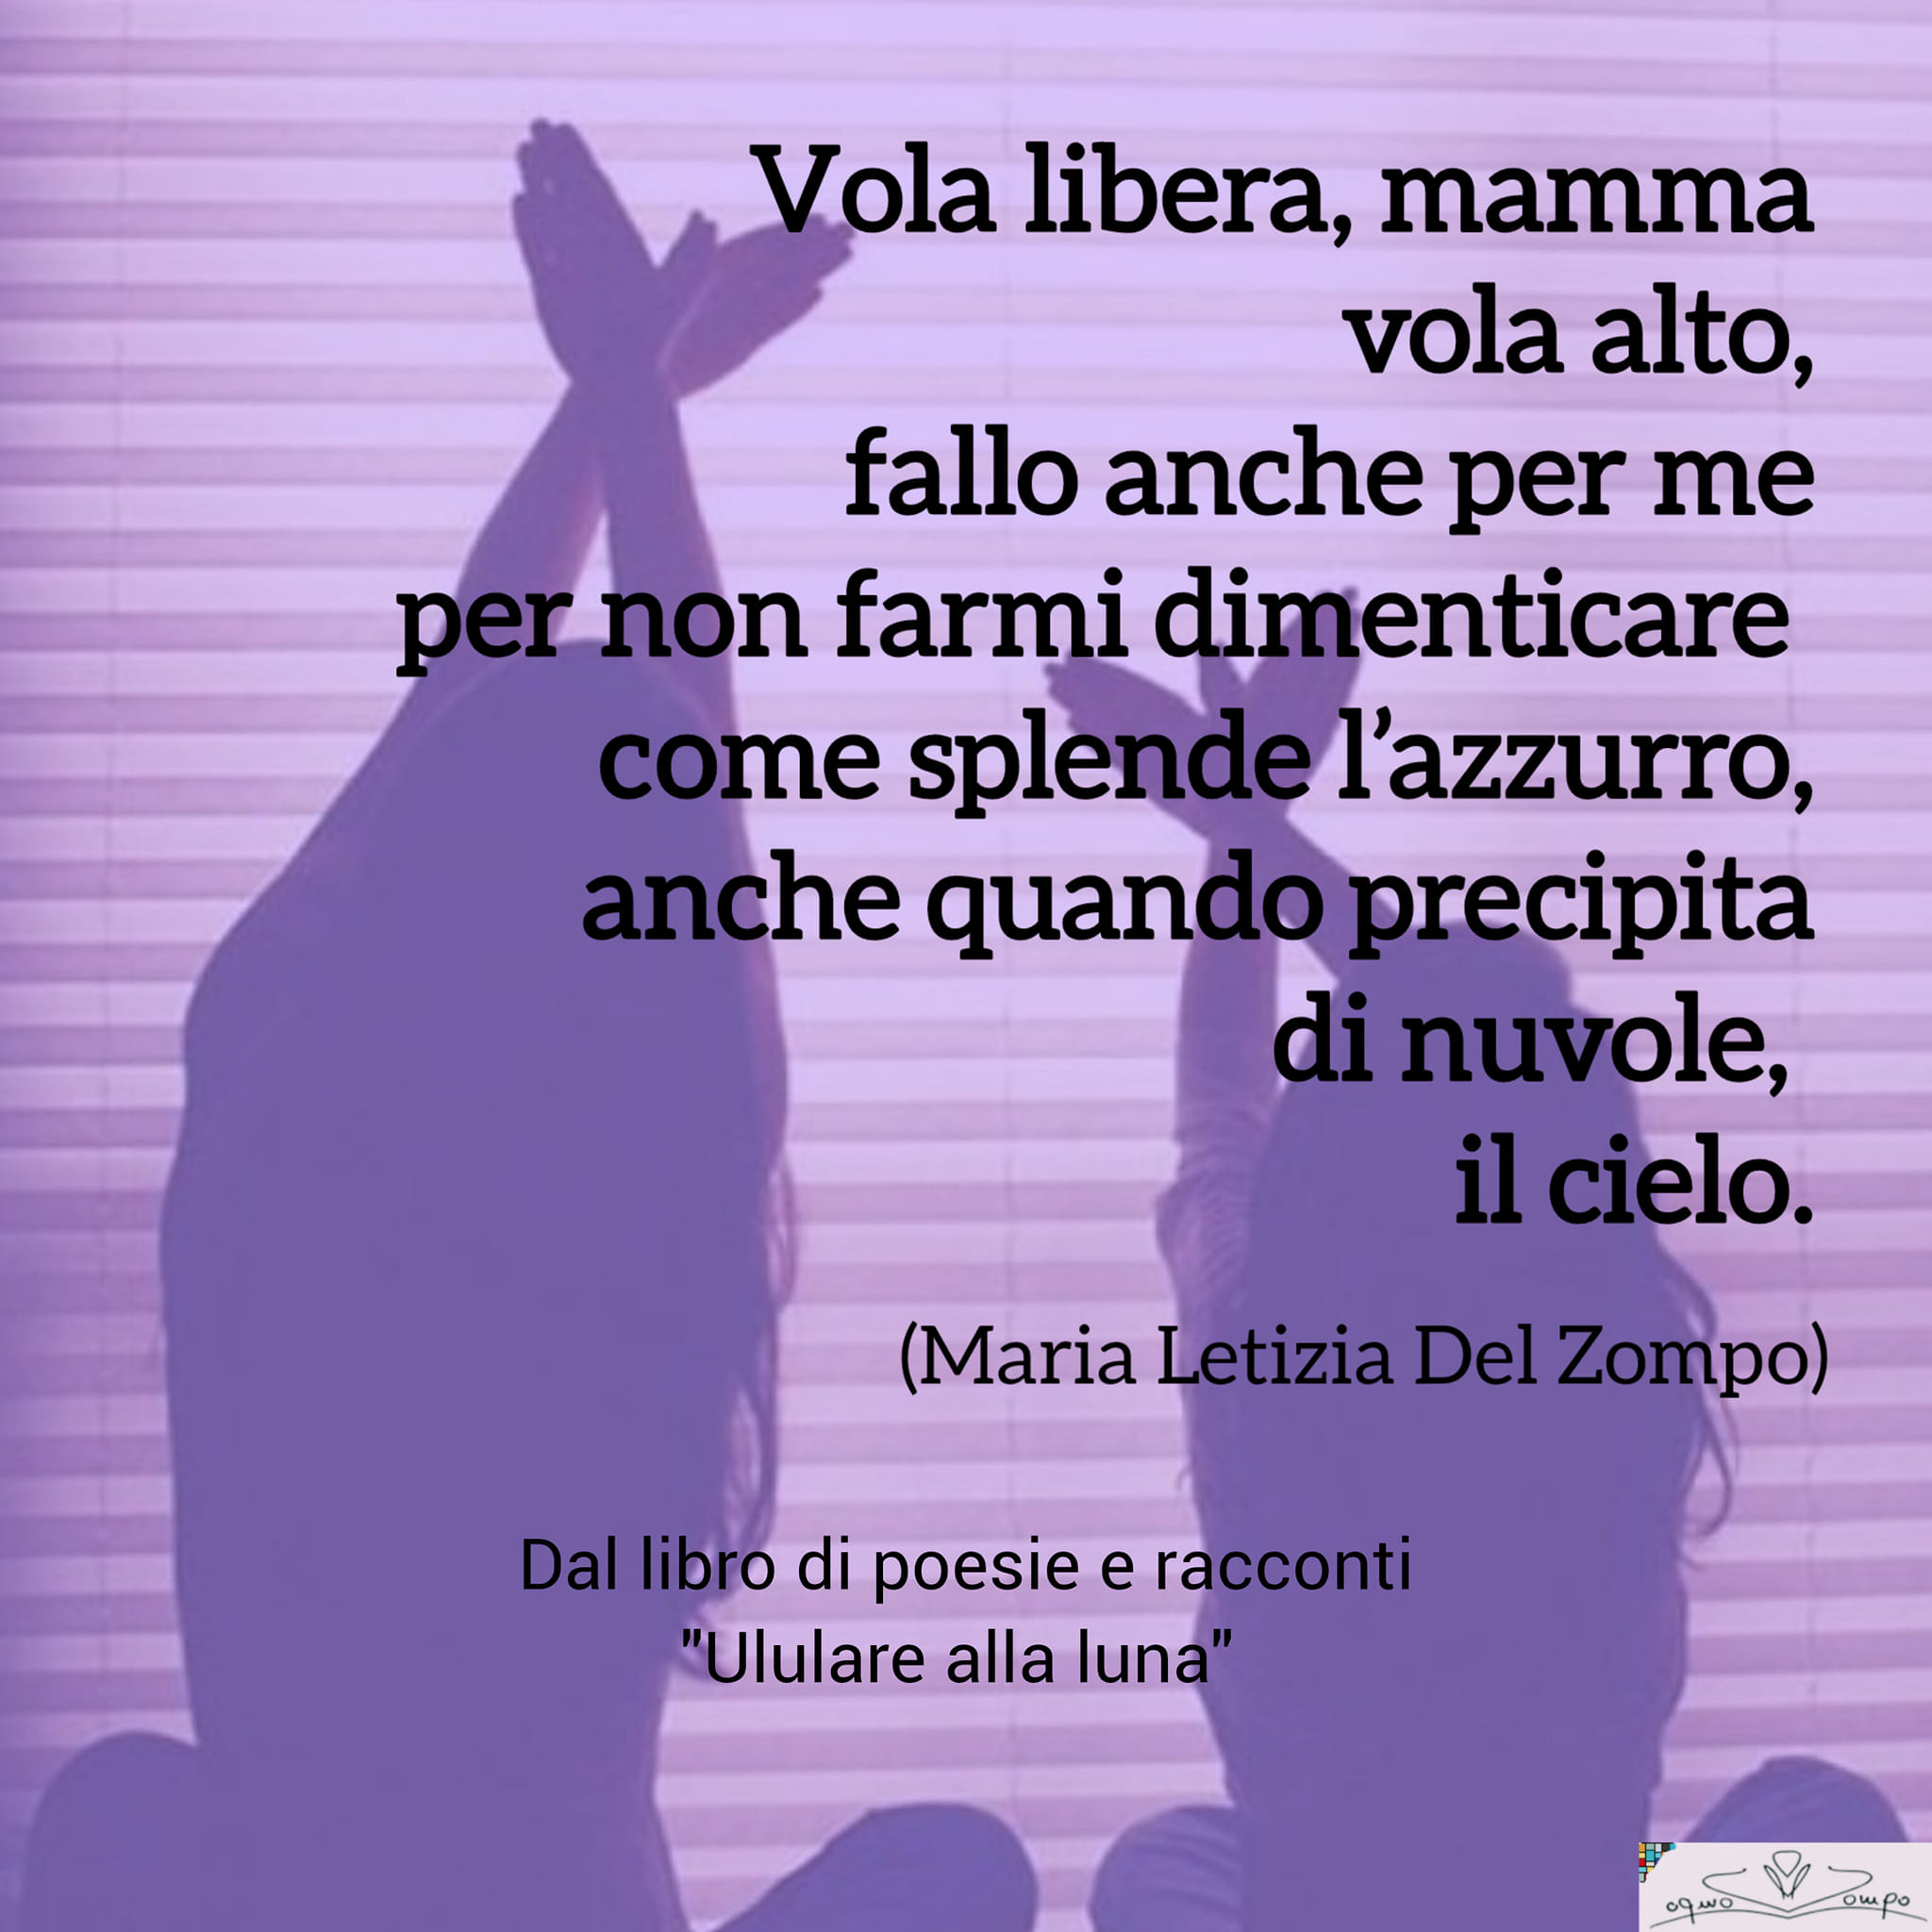 Festa della mamma - Poesia dal libro "Ululare alla luna" di Maria Letizia Del Zompo